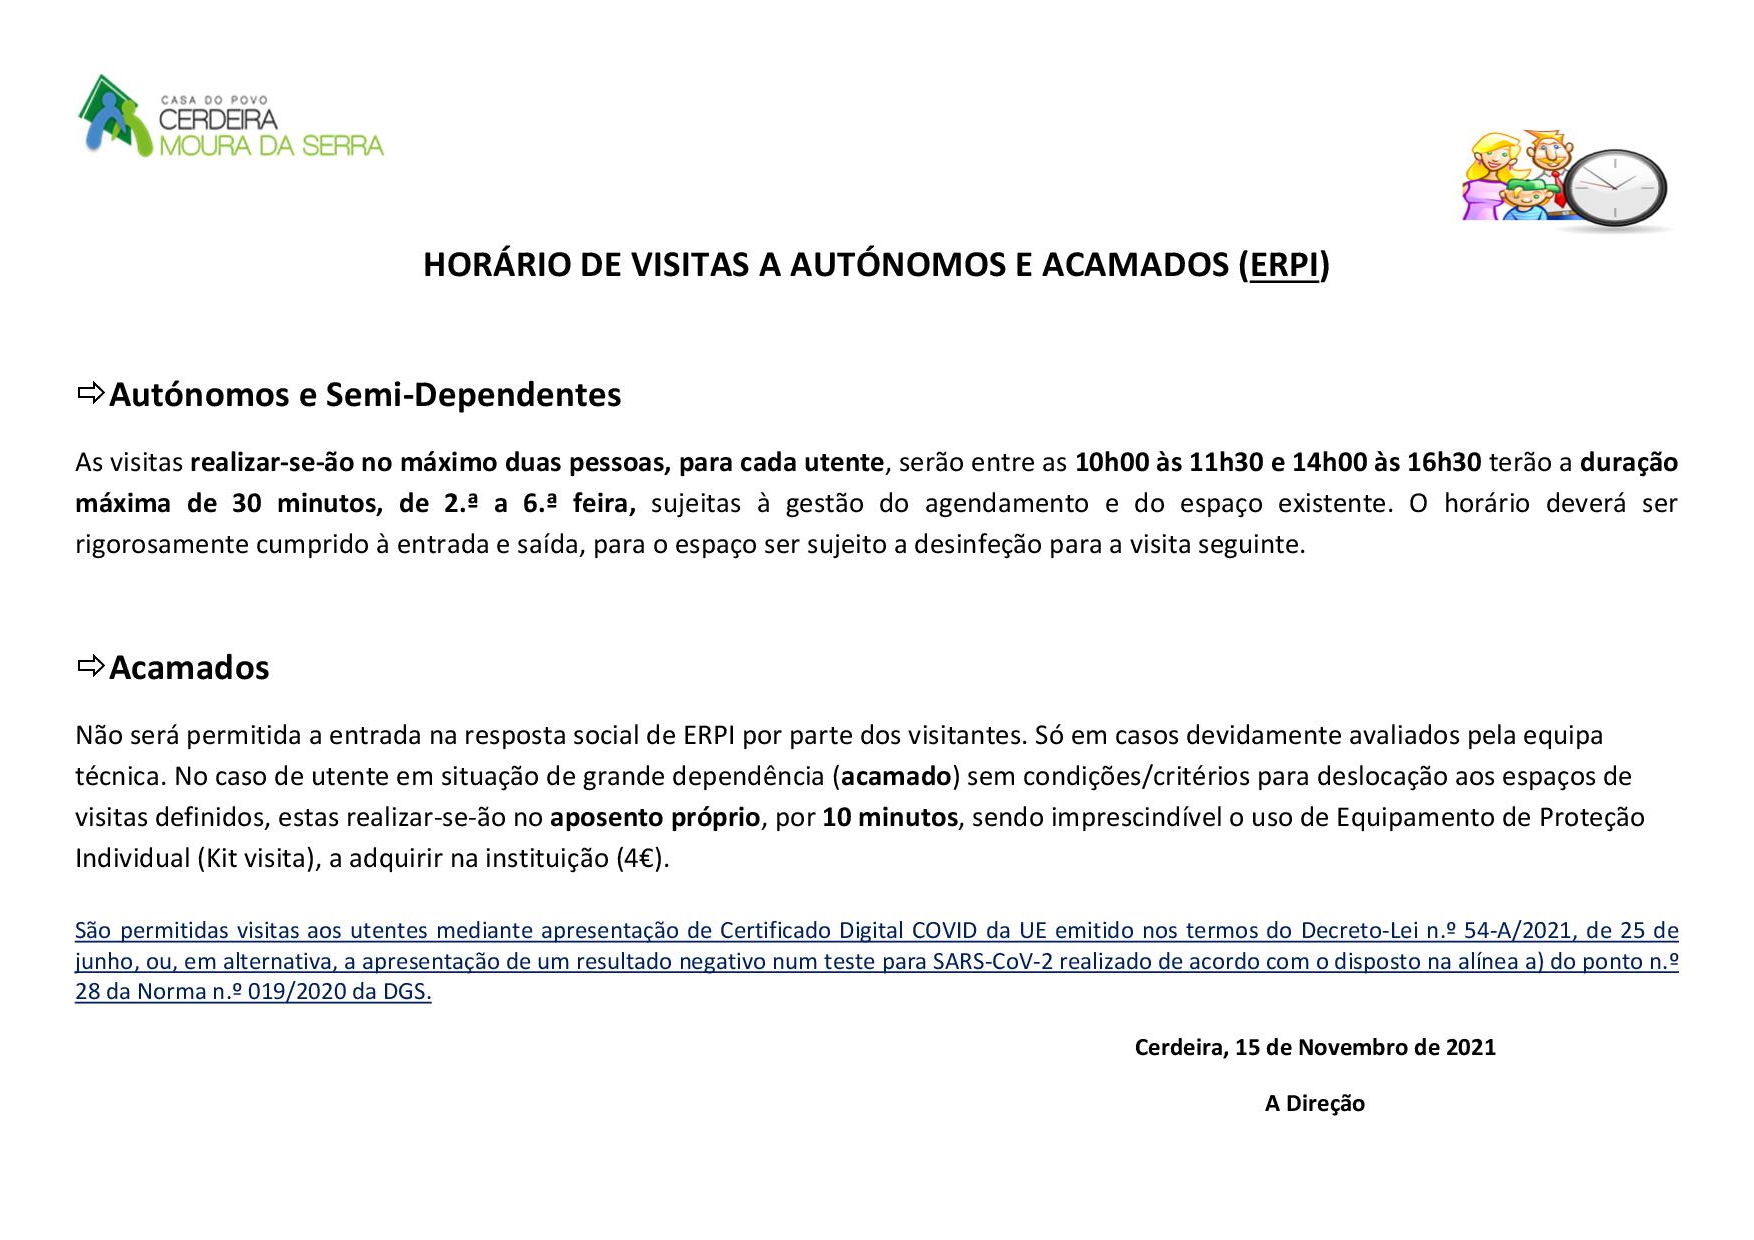 HORÁRIO DE VISITAS A AUTÓNOMOS E ACAMADOS (ERPI) em 15/11/2021